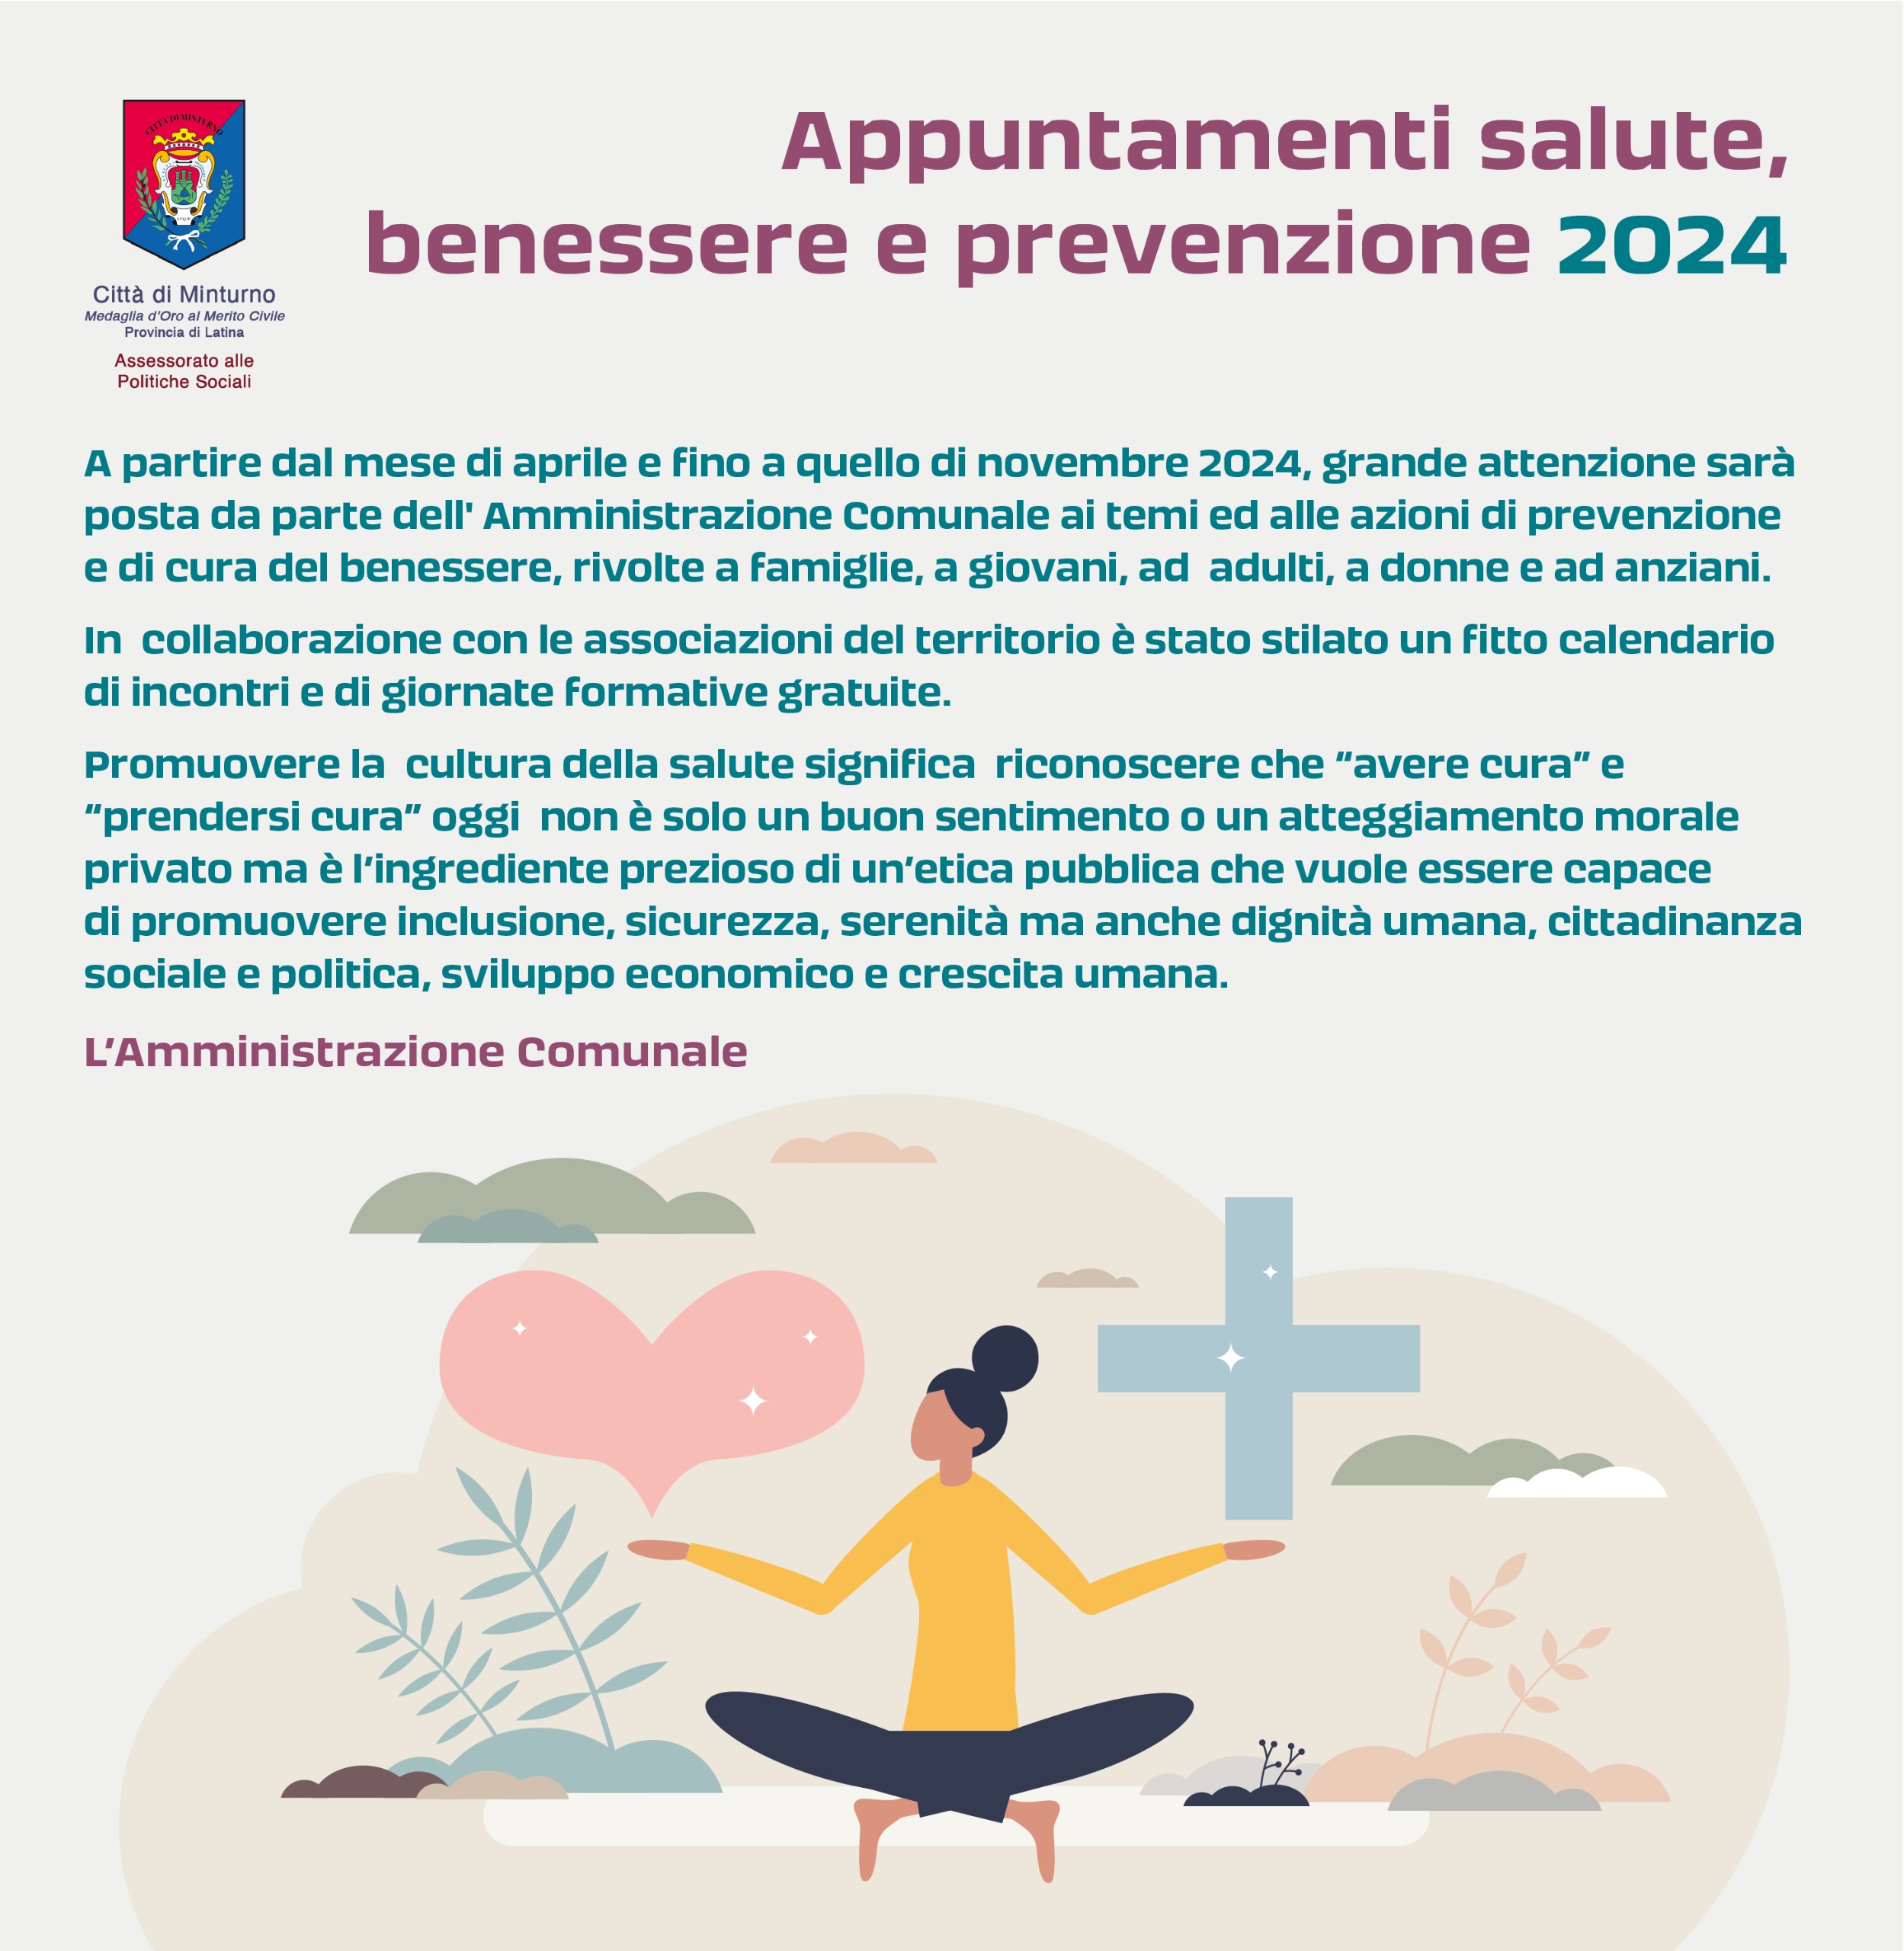 Prevenzione, salute e cura del benessere: incontri gratuiti a Minturno da aprile a novembre 2024